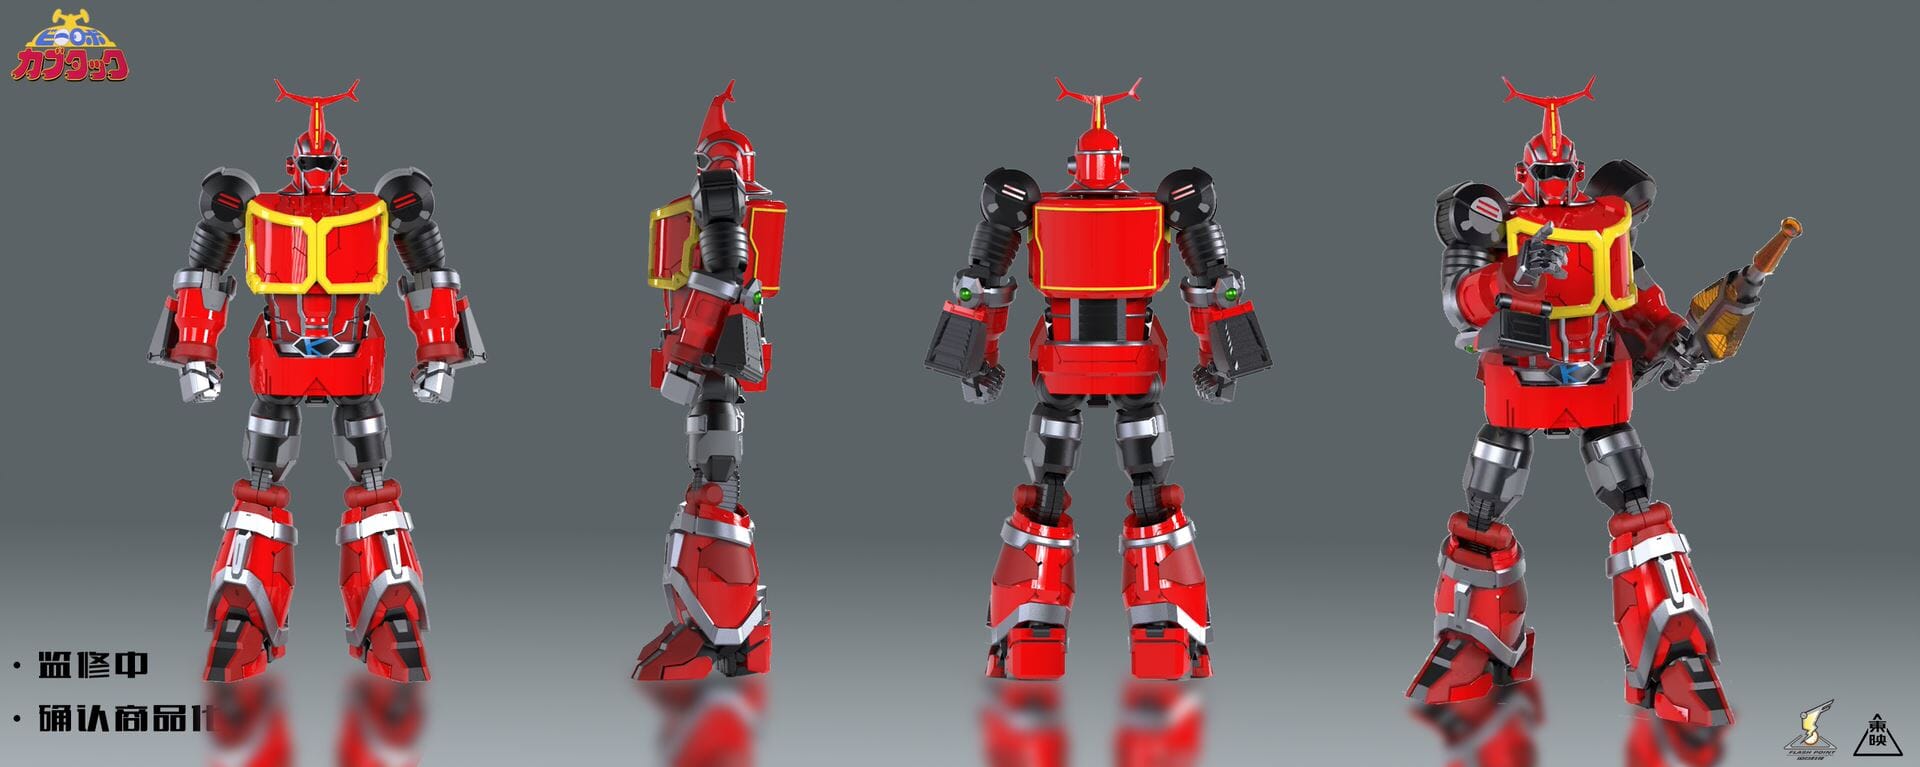 Flash Point releases B-Robots No.1 Kabutack from B-Robo Kabutack!